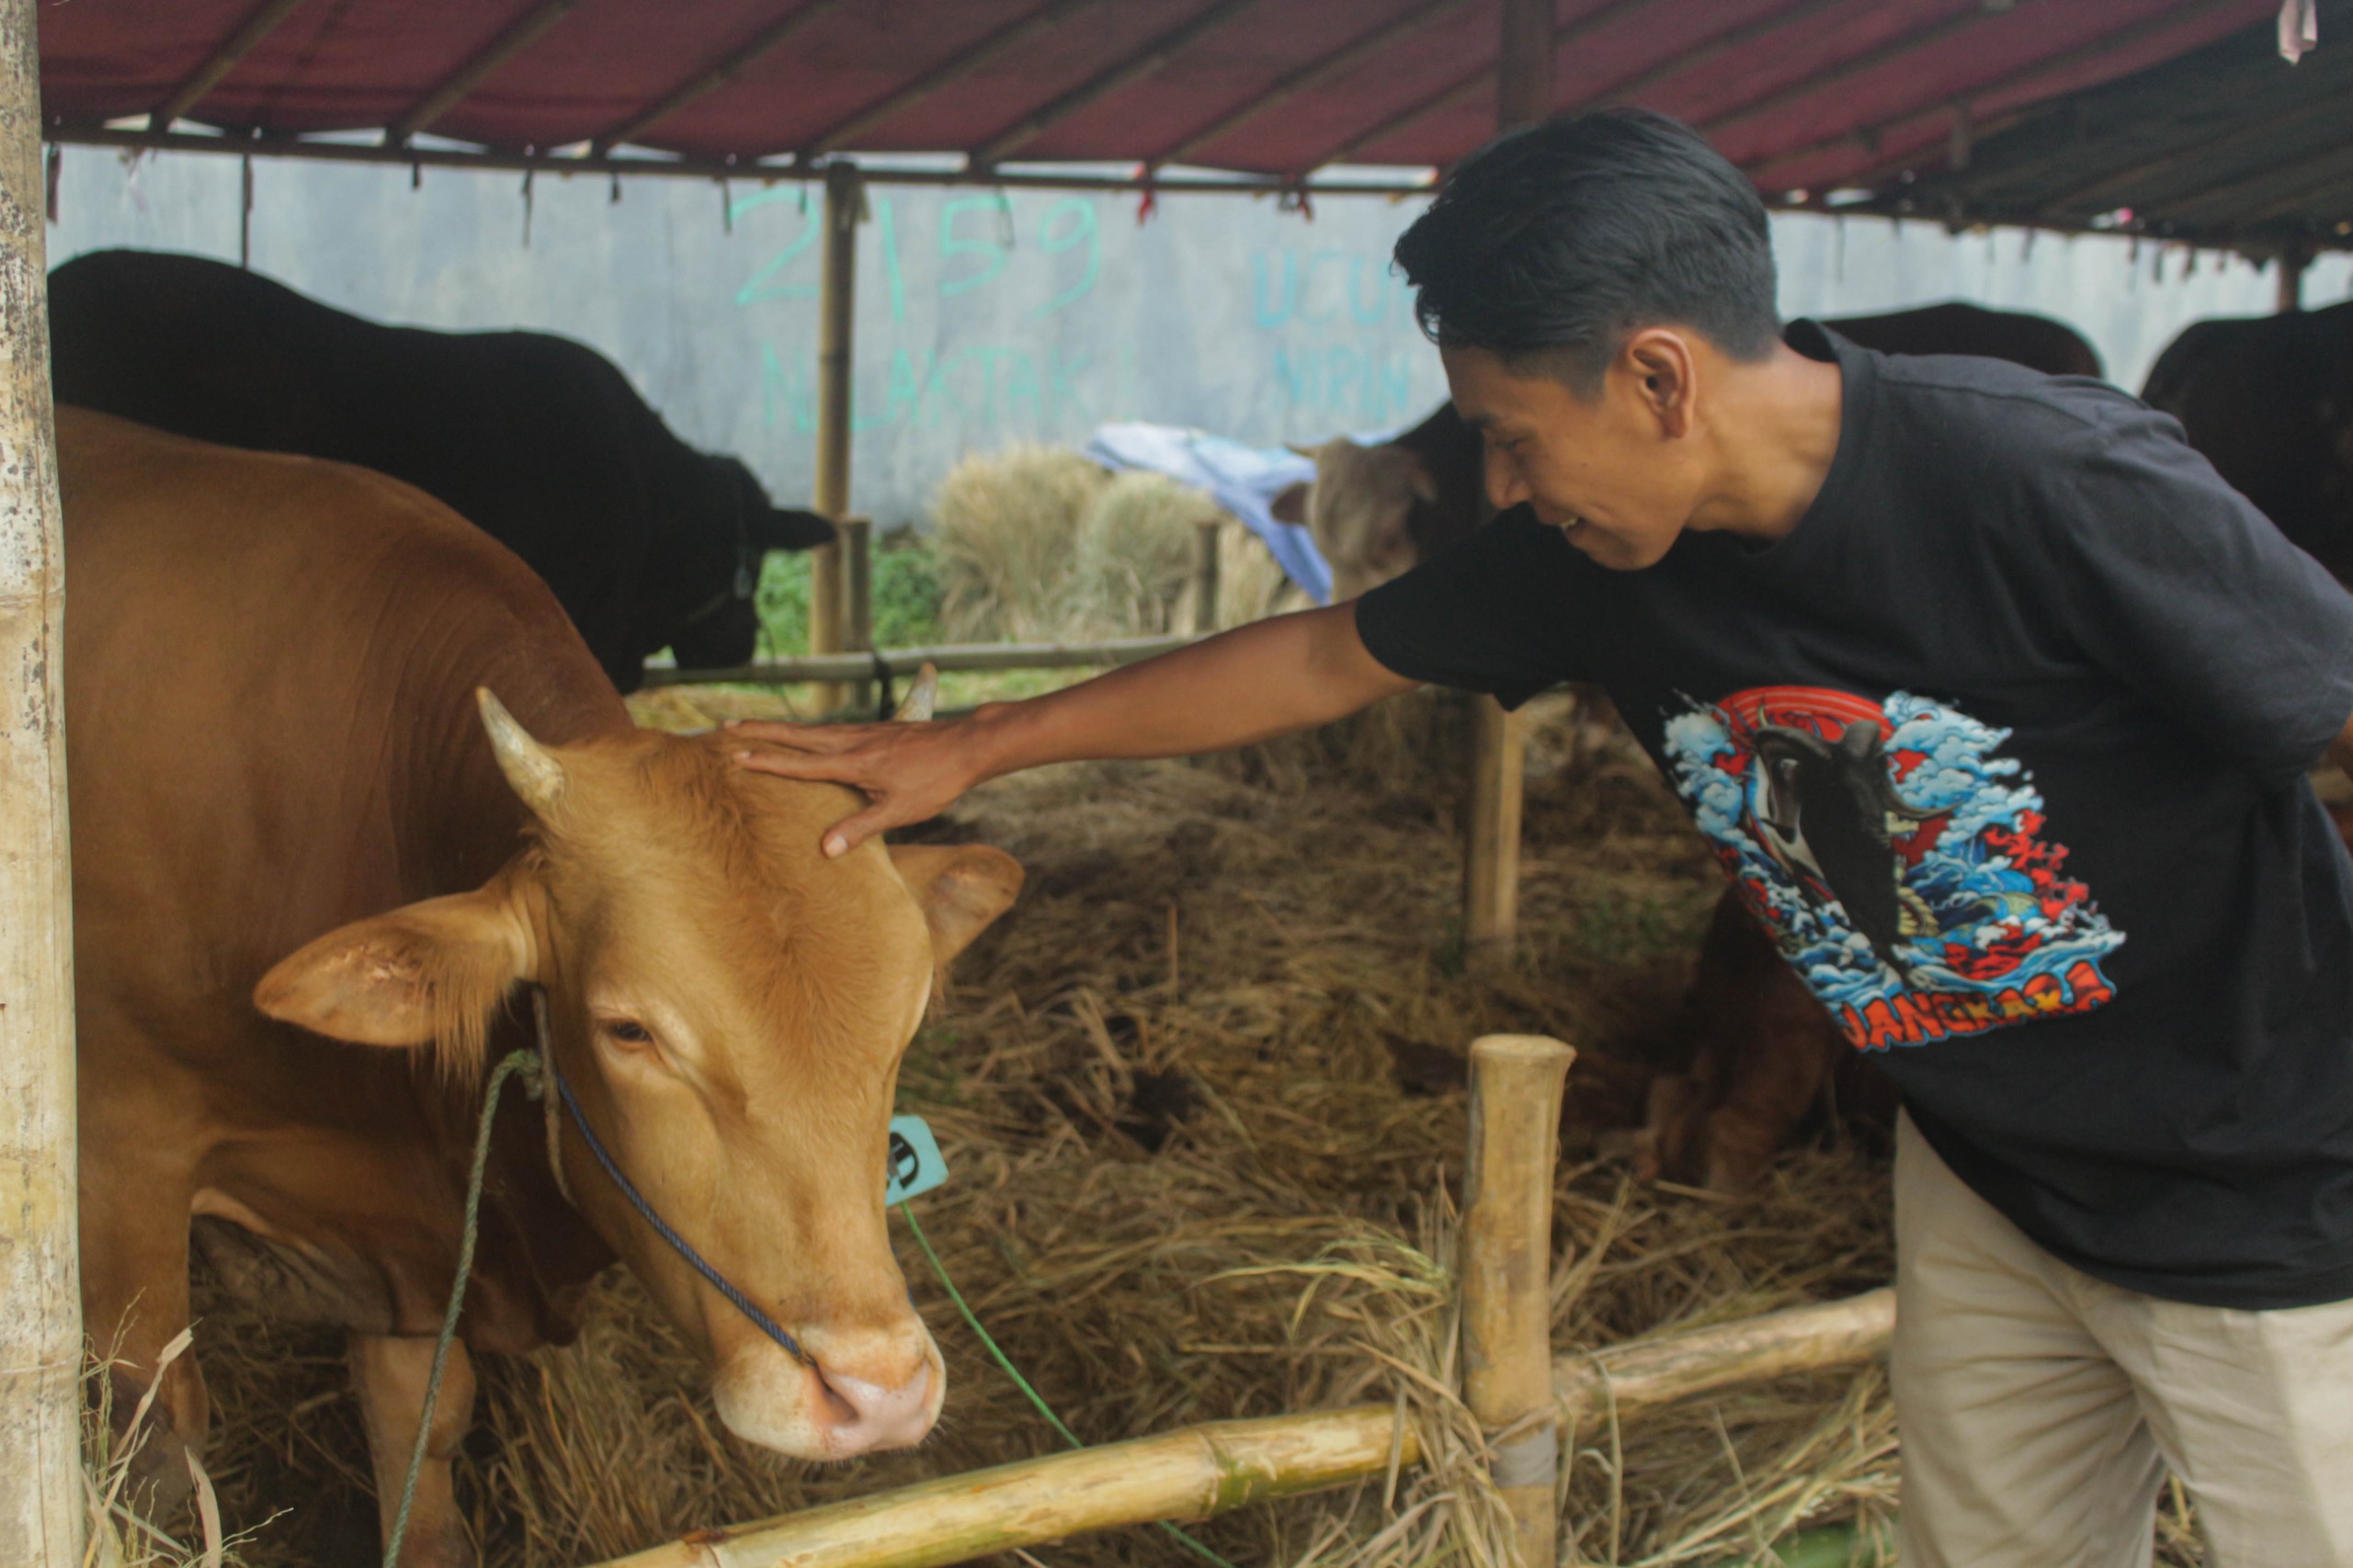 Penjual mengecek kondisi sapi di Lapak Penjualan hewan qurban Jalan Soekarno Hatta, Bandung. (Pandu Muslim/Jabar Ekspres)